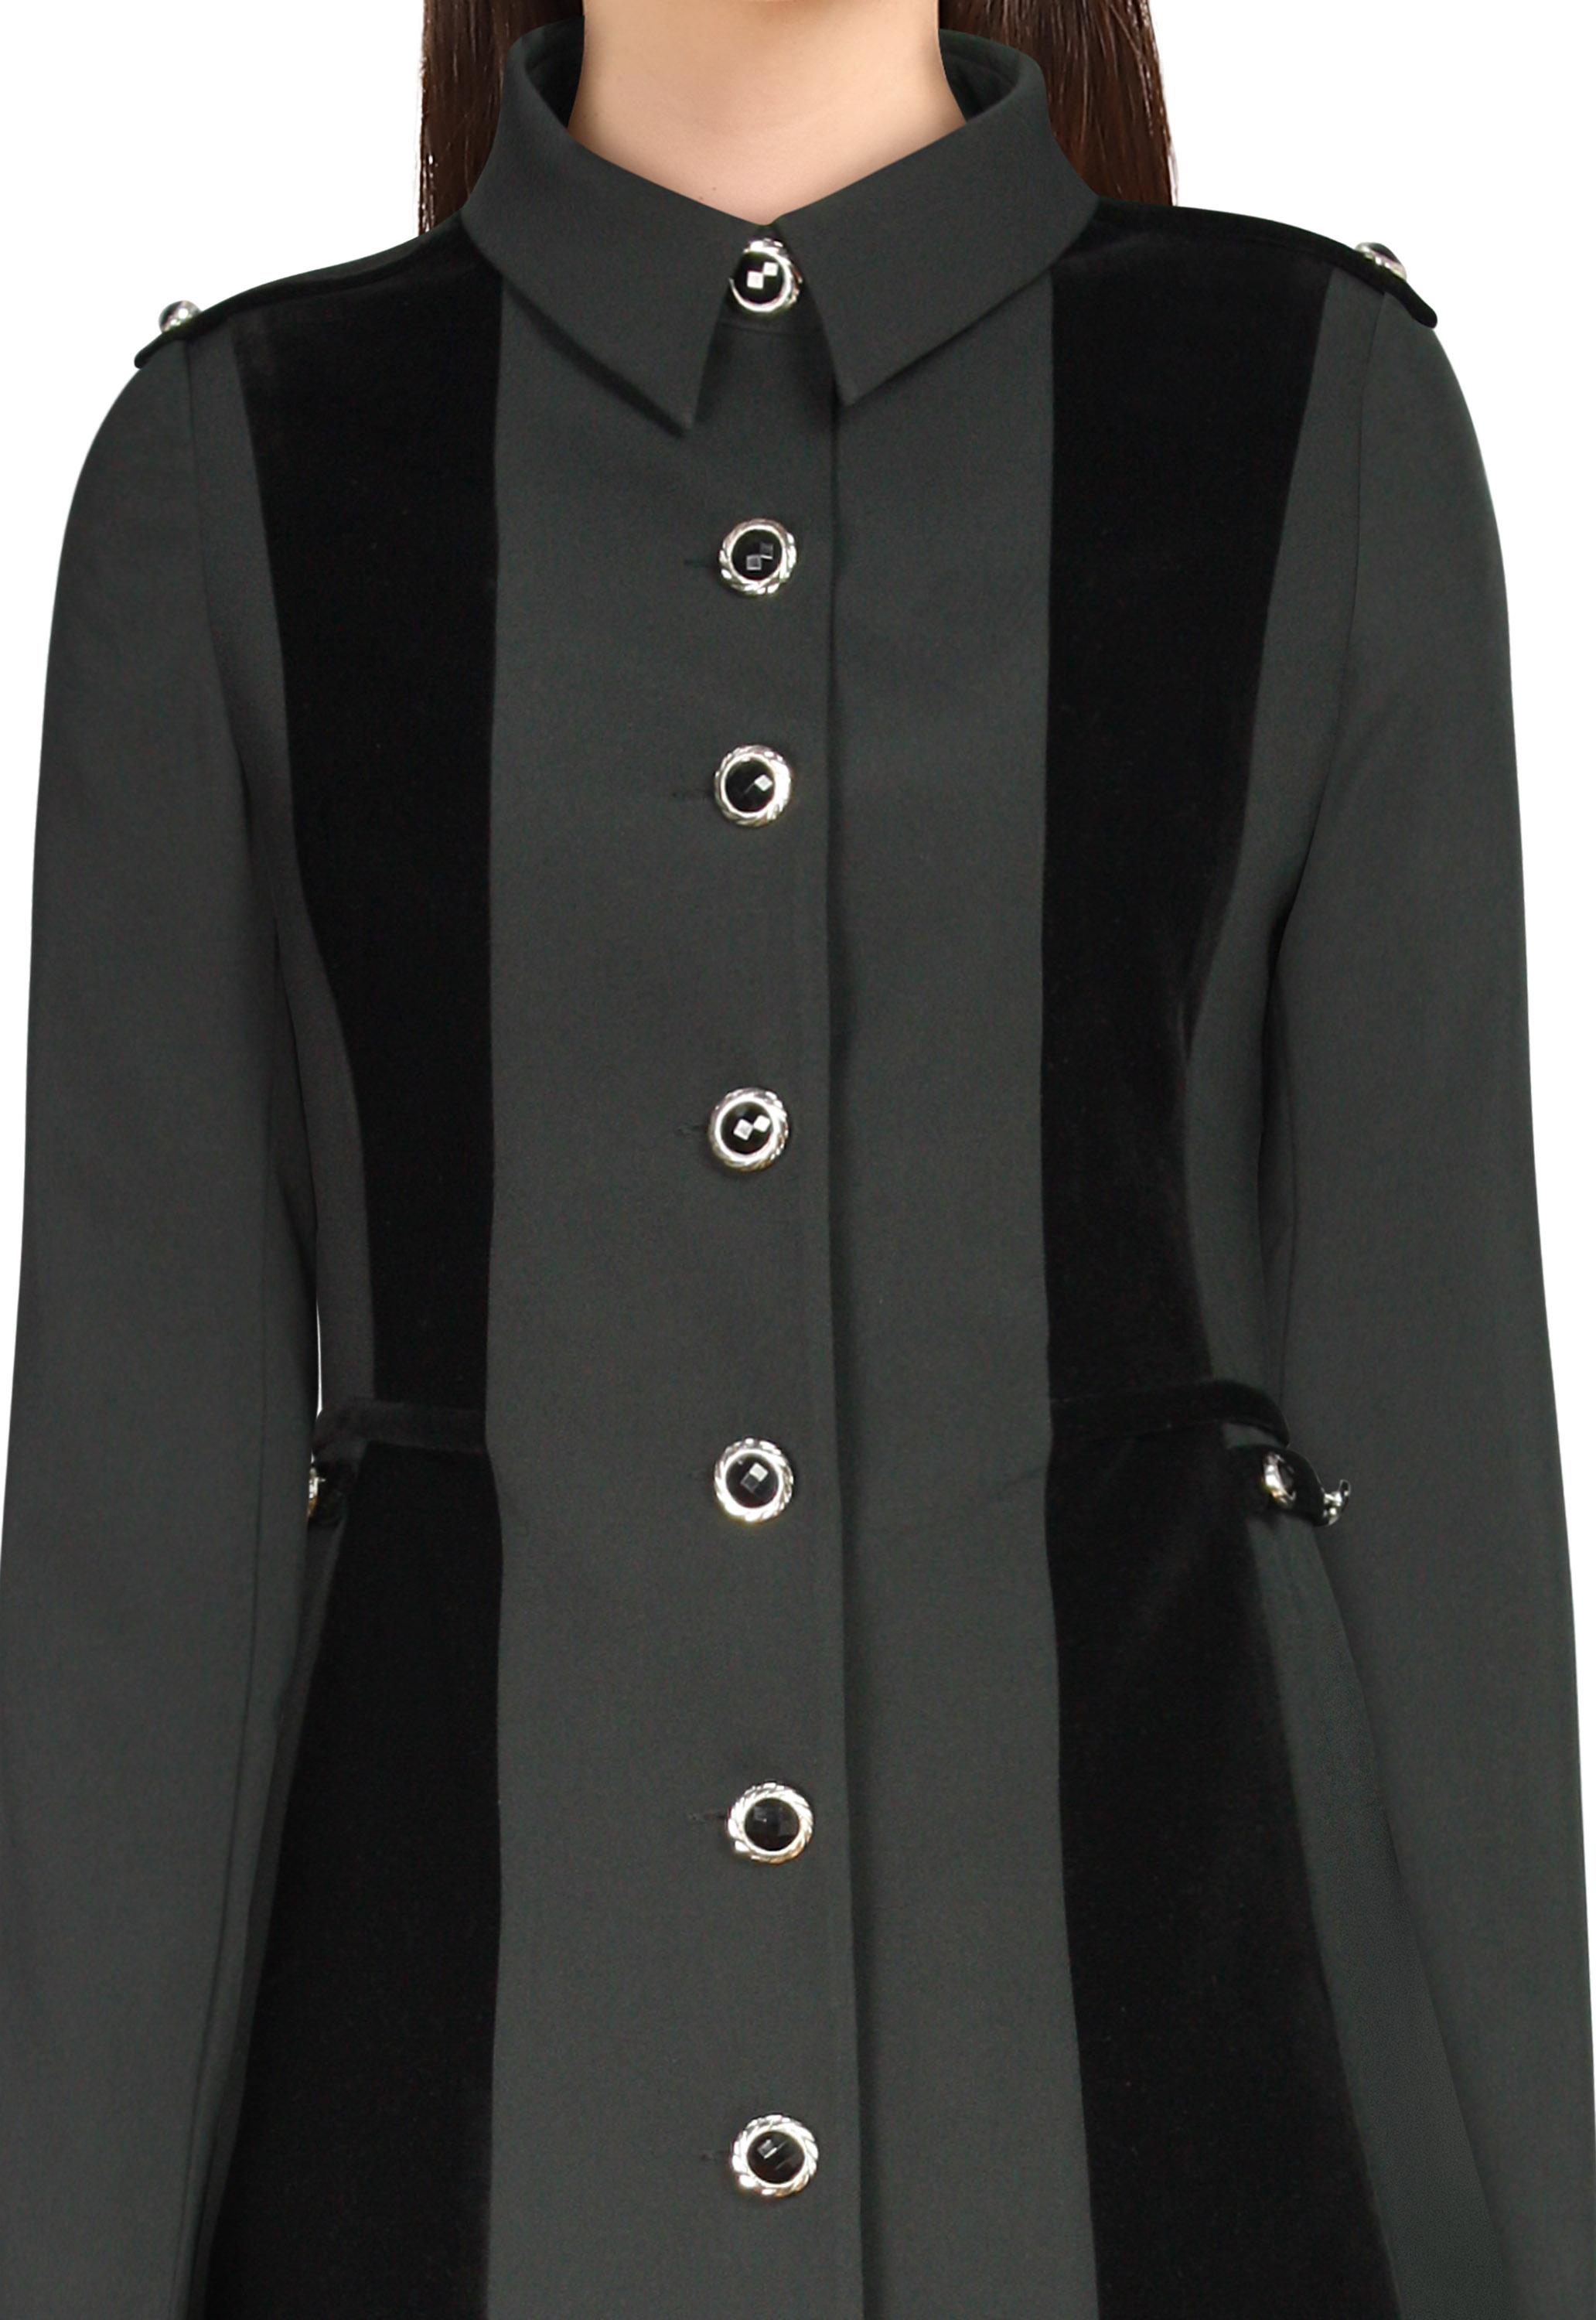 Velvet Jacket Coat